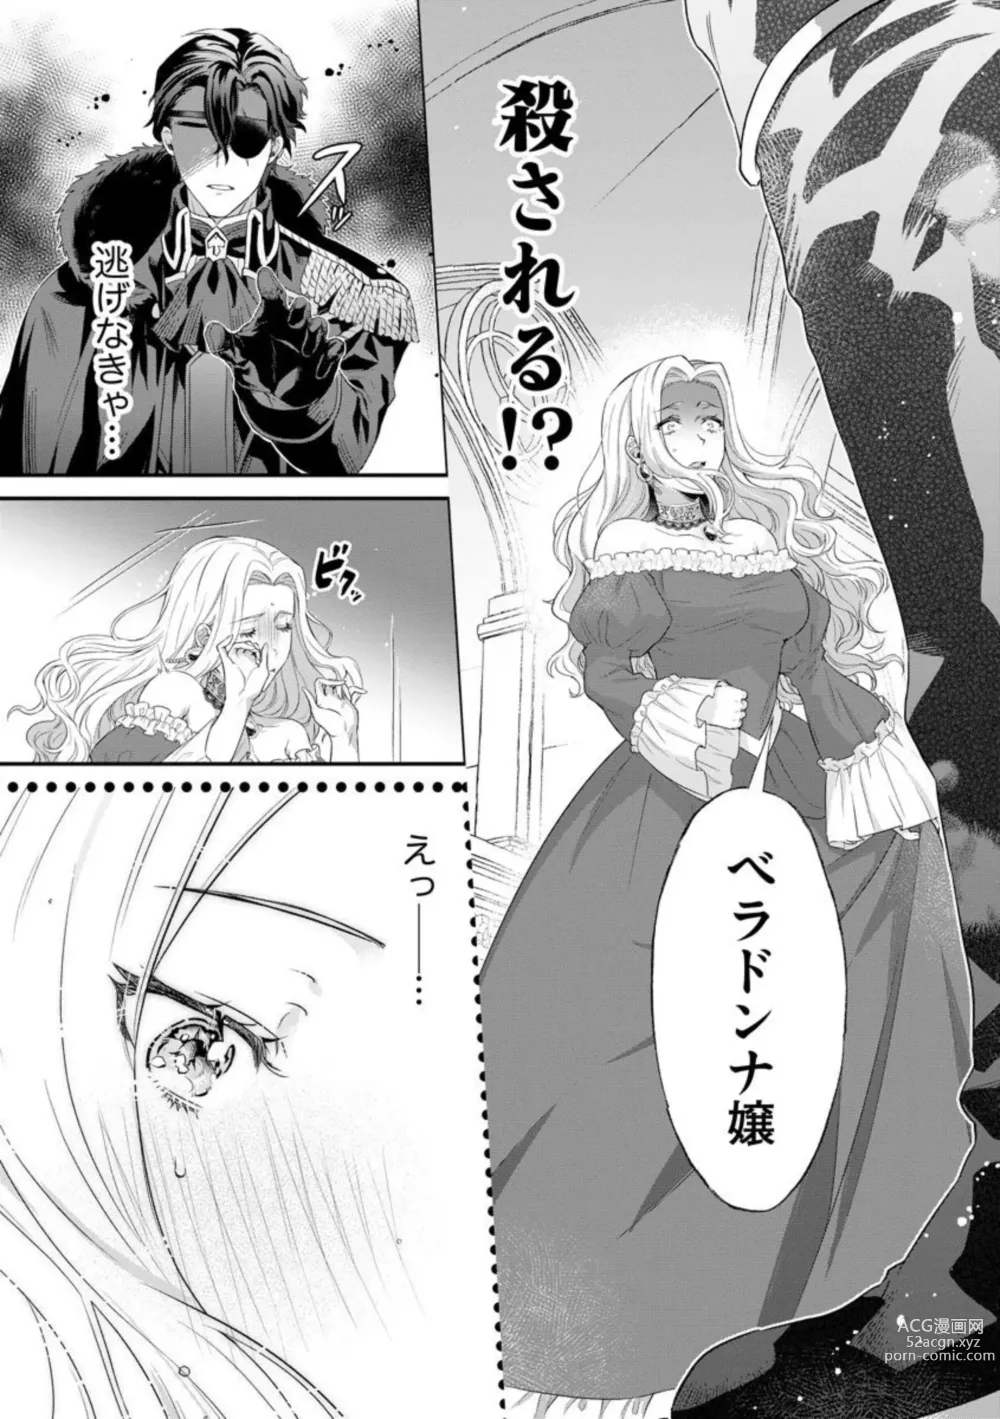 Page 17 of manga Kaibutsu Hakushaku no Amai Hana Akuyaku Reijou wa Bed de Midare Chiru 1